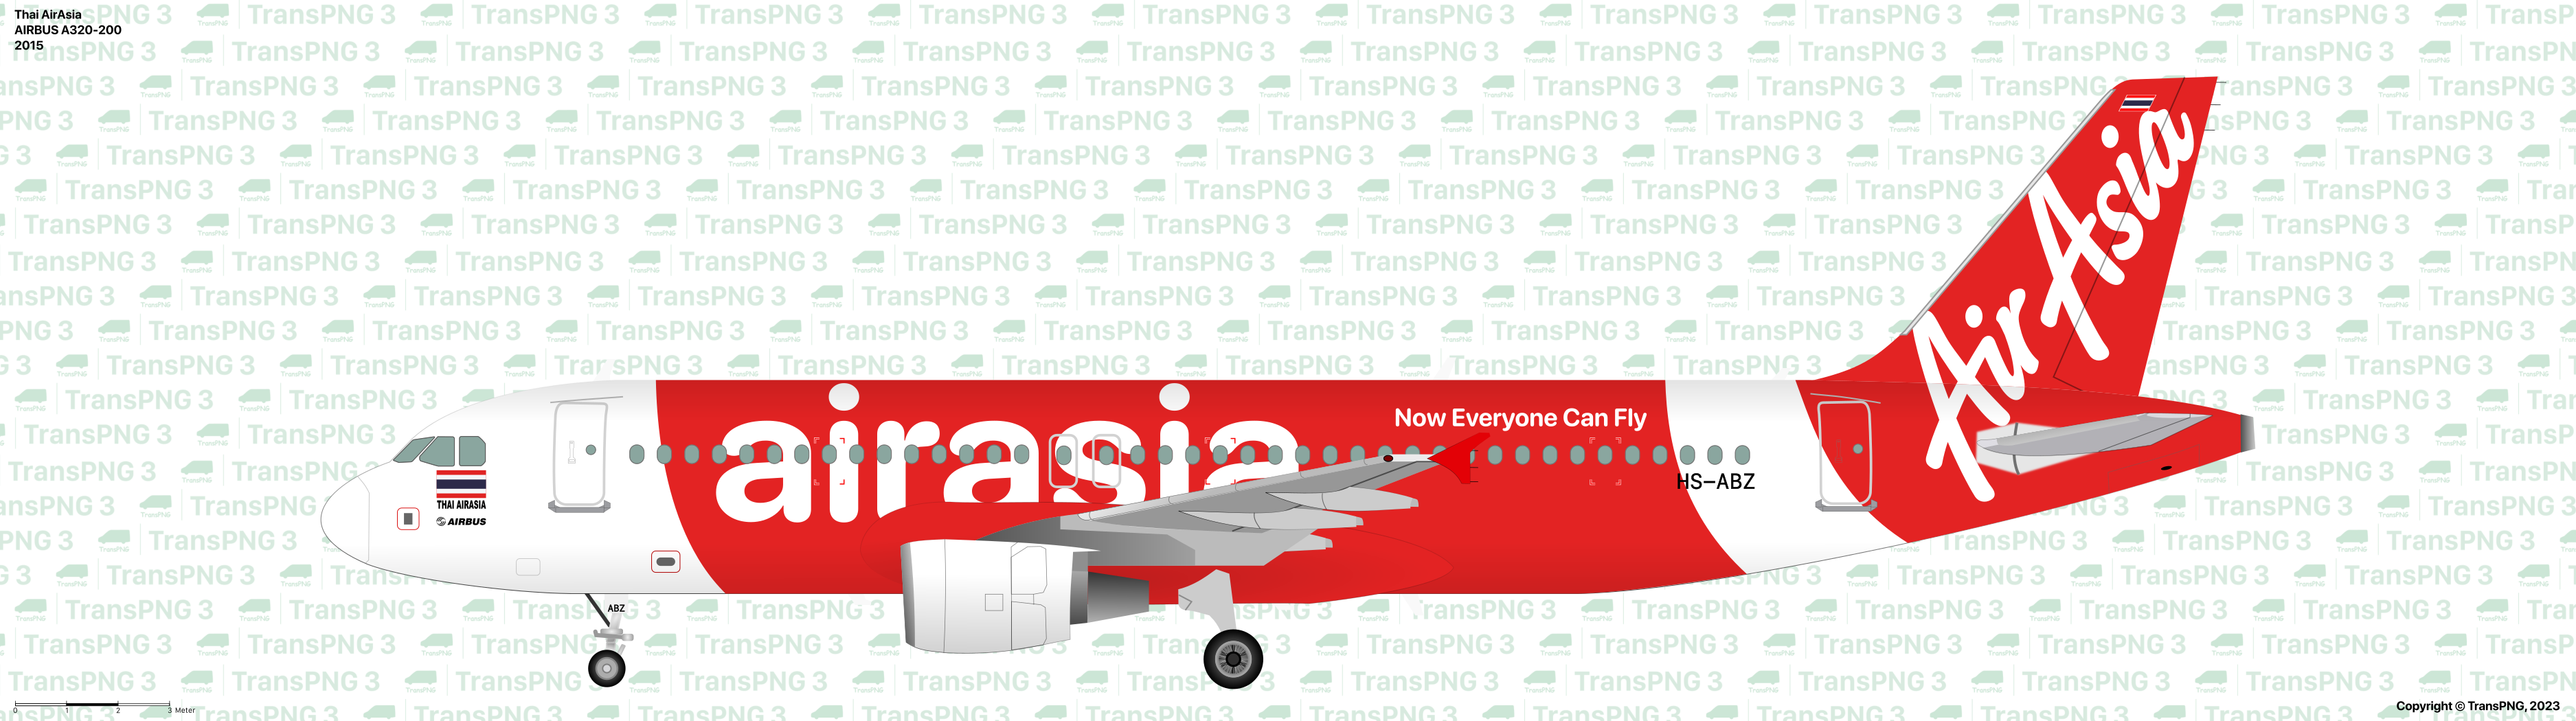 TransPNG.net | 分享世界各地多種交通工具的優秀繪圖 - 客機 53279120360_8282832465_o